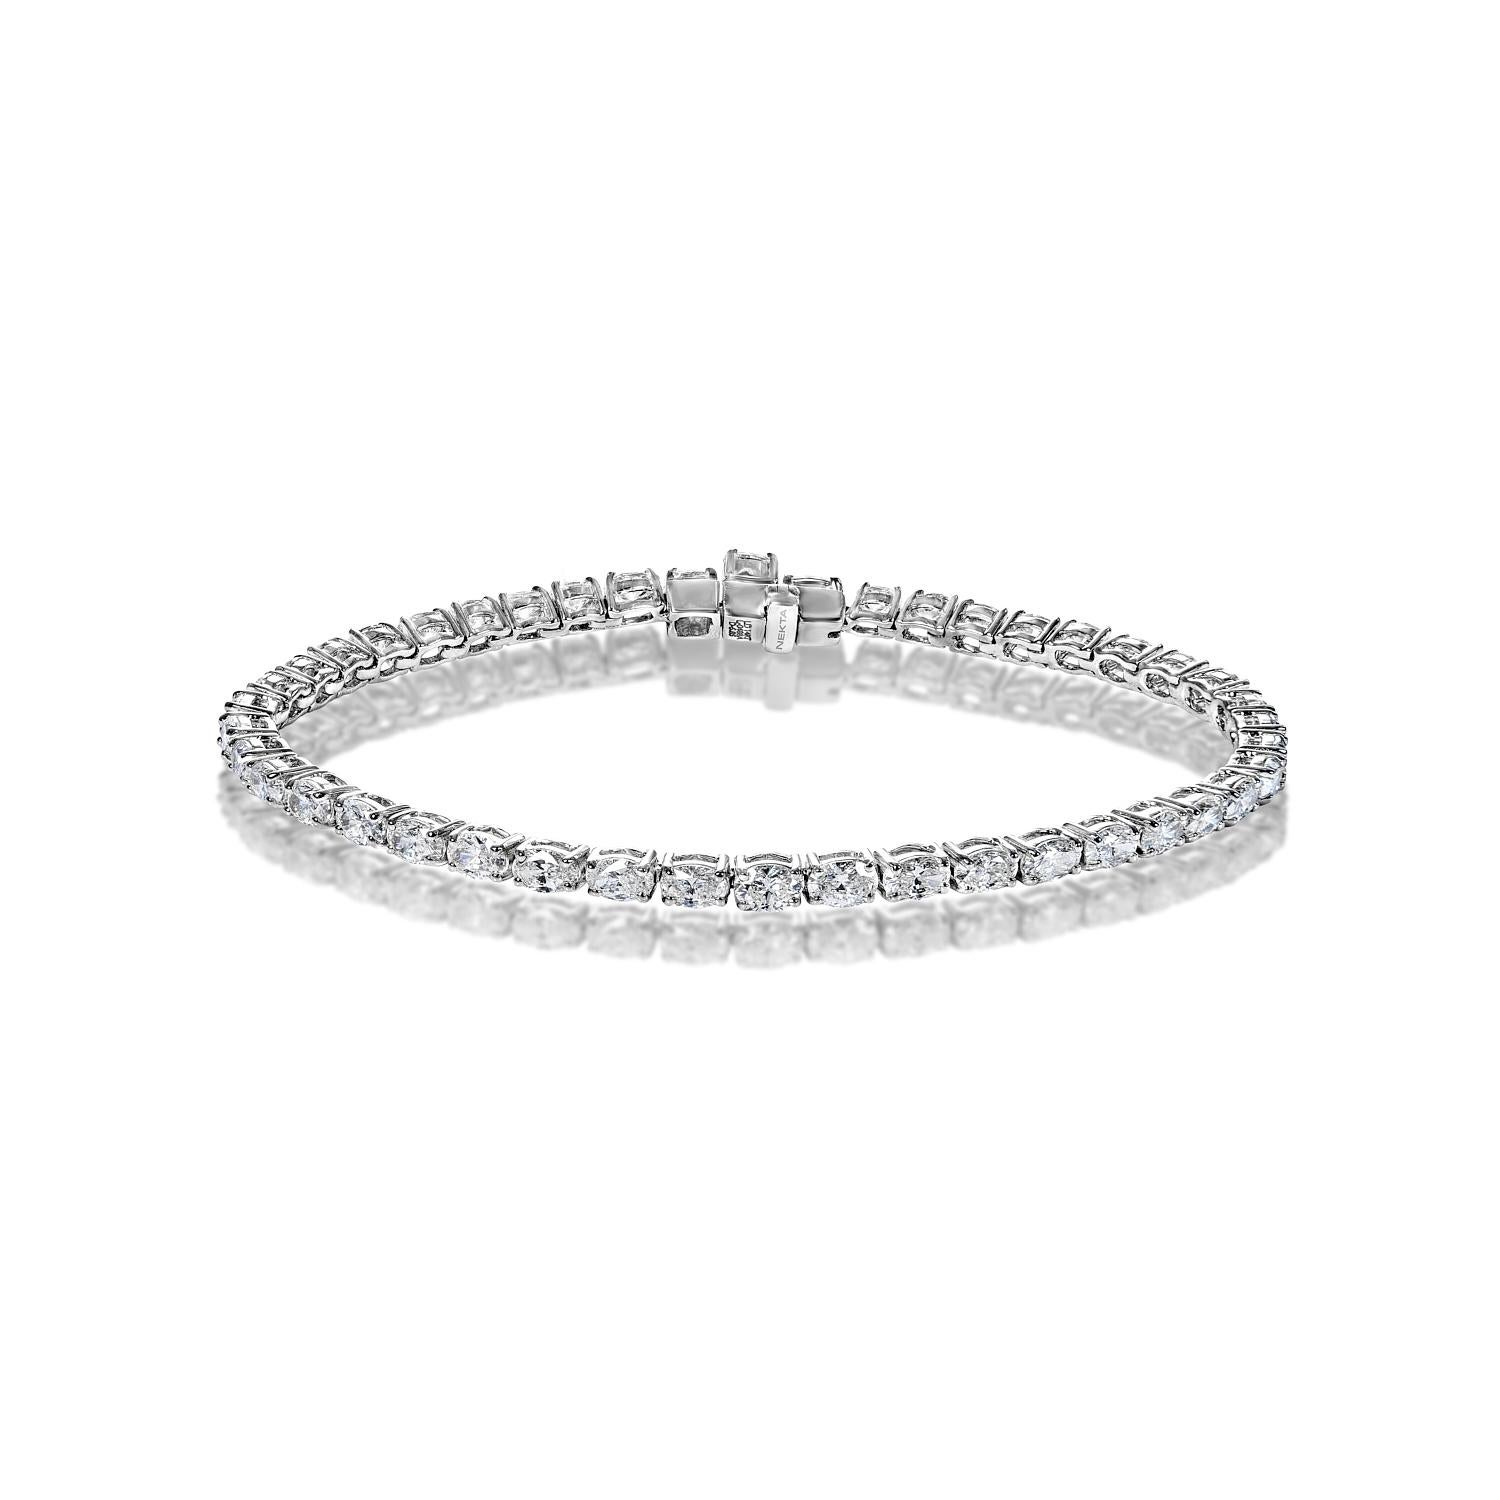 Le bracelet tennis à un rang de diamants Alessia 5,85 carats présente des DIAMANTS COUTE D'OVALE brillants pesant au total environ 5,85 carats, sertis dans de l'or blanc 14 carats.

Style : Bracelet de tennis à un rang de diamants
Diamants
Taille du